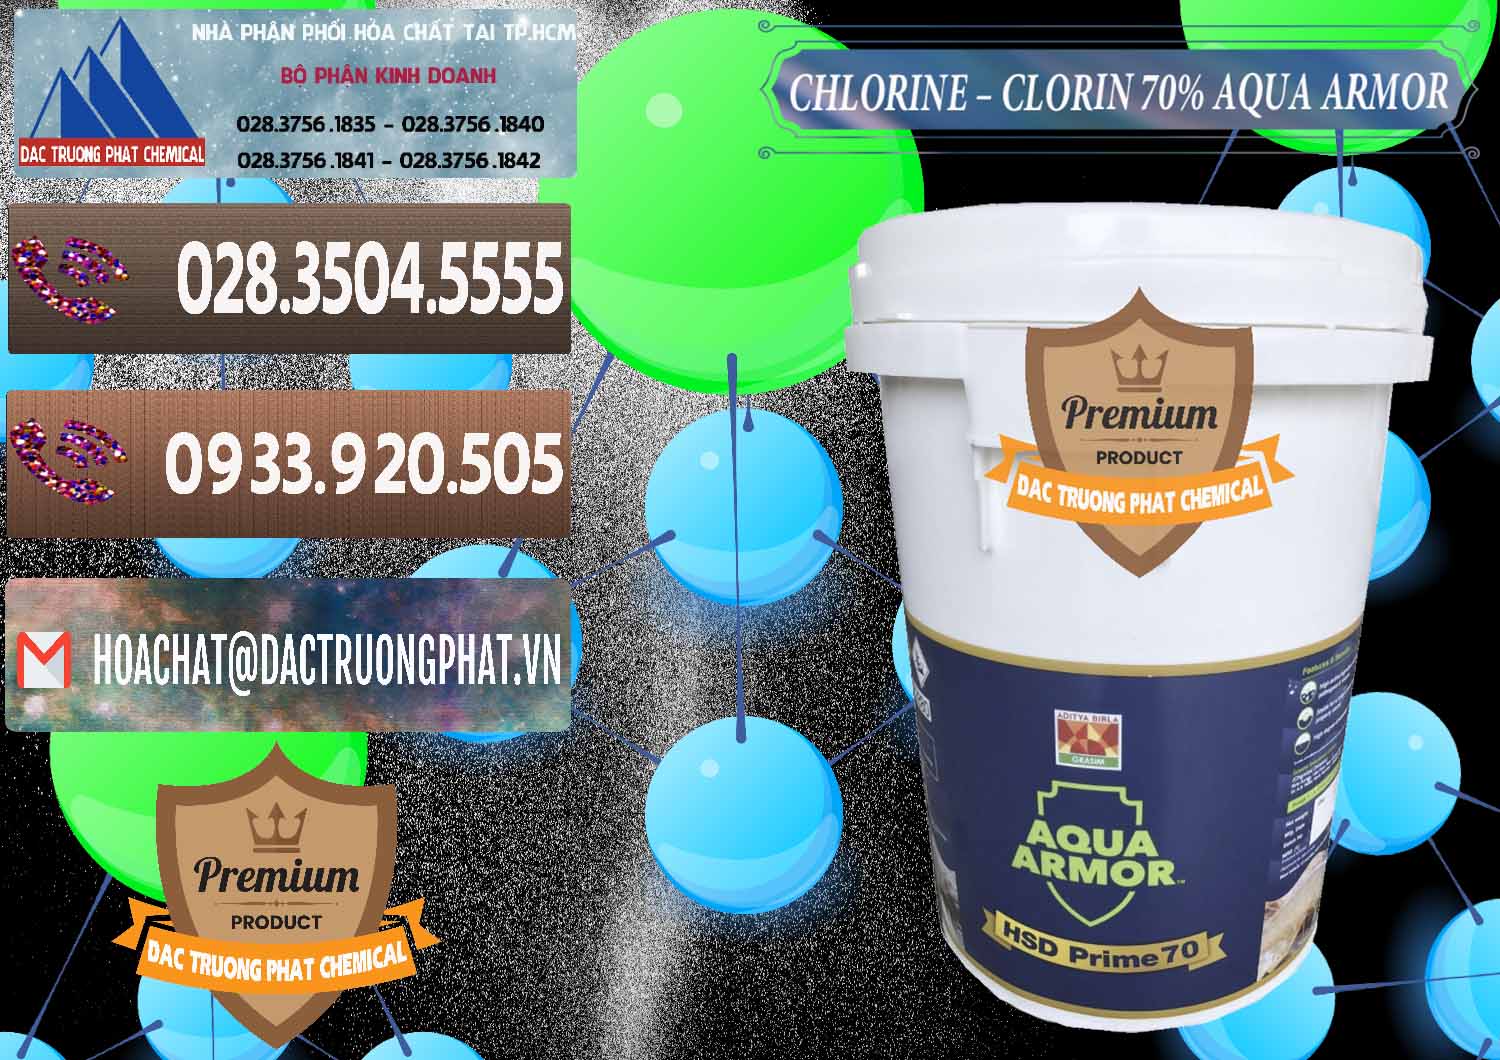 Nơi bán & phân phối Chlorine – Clorin 70% Aqua Armor Aditya Birla Grasim Ấn Độ India - 0241 - Đơn vị nhập khẩu và phân phối hóa chất tại TP.HCM - hoachatviet.net